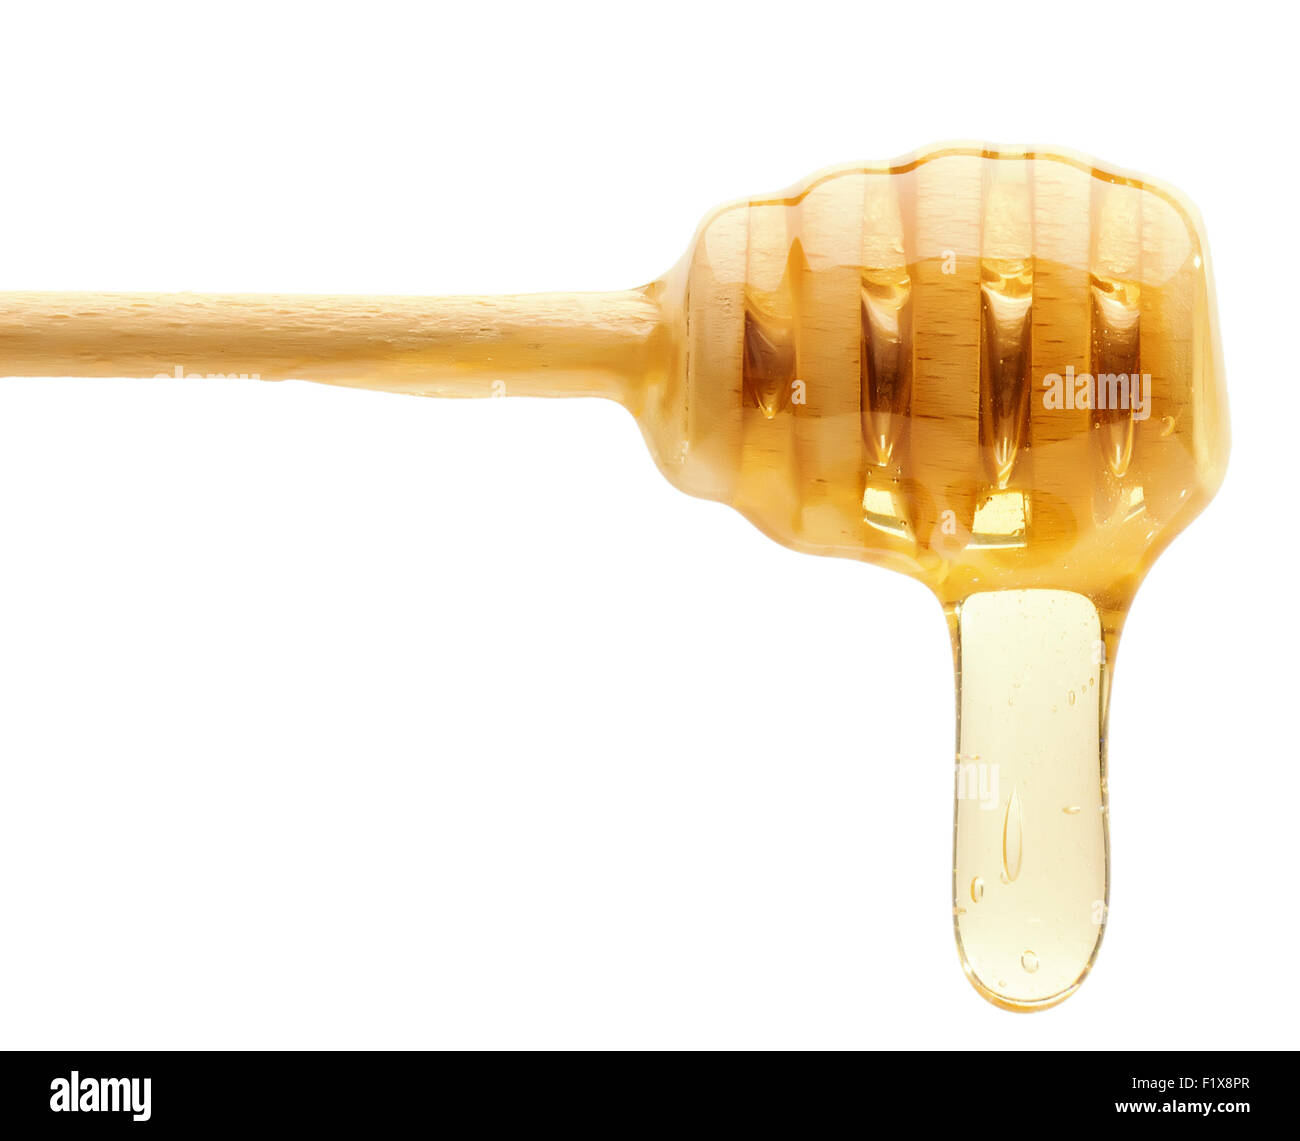 Le miel des gouttes d'un balancier de miel en bois isolé sur le fond blanc. Banque D'Images